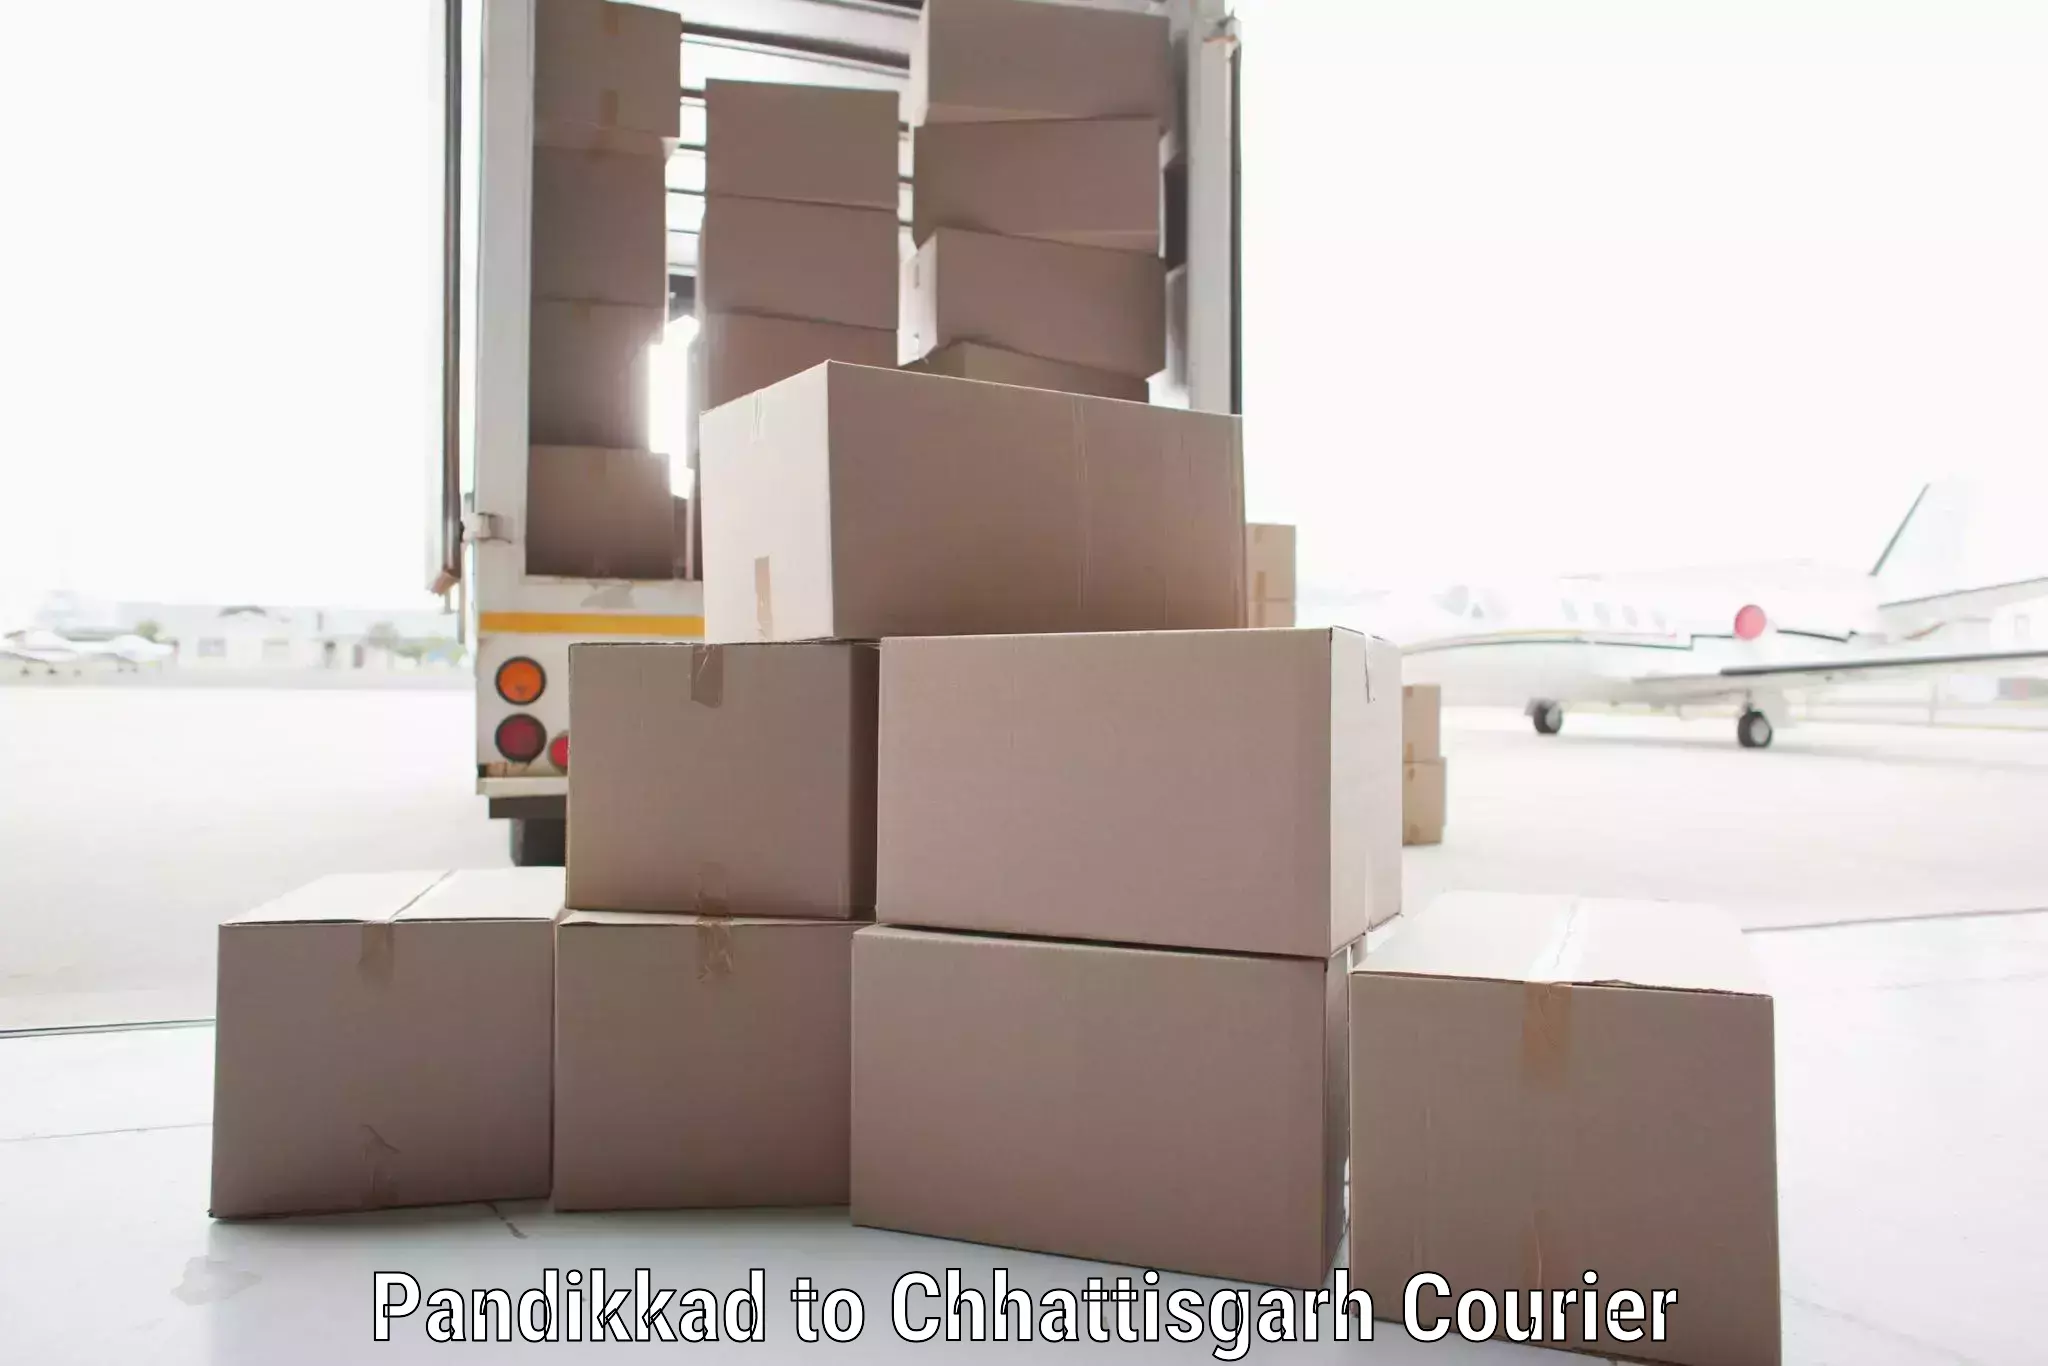 Efficient cargo handling Pandikkad to Manendragarh